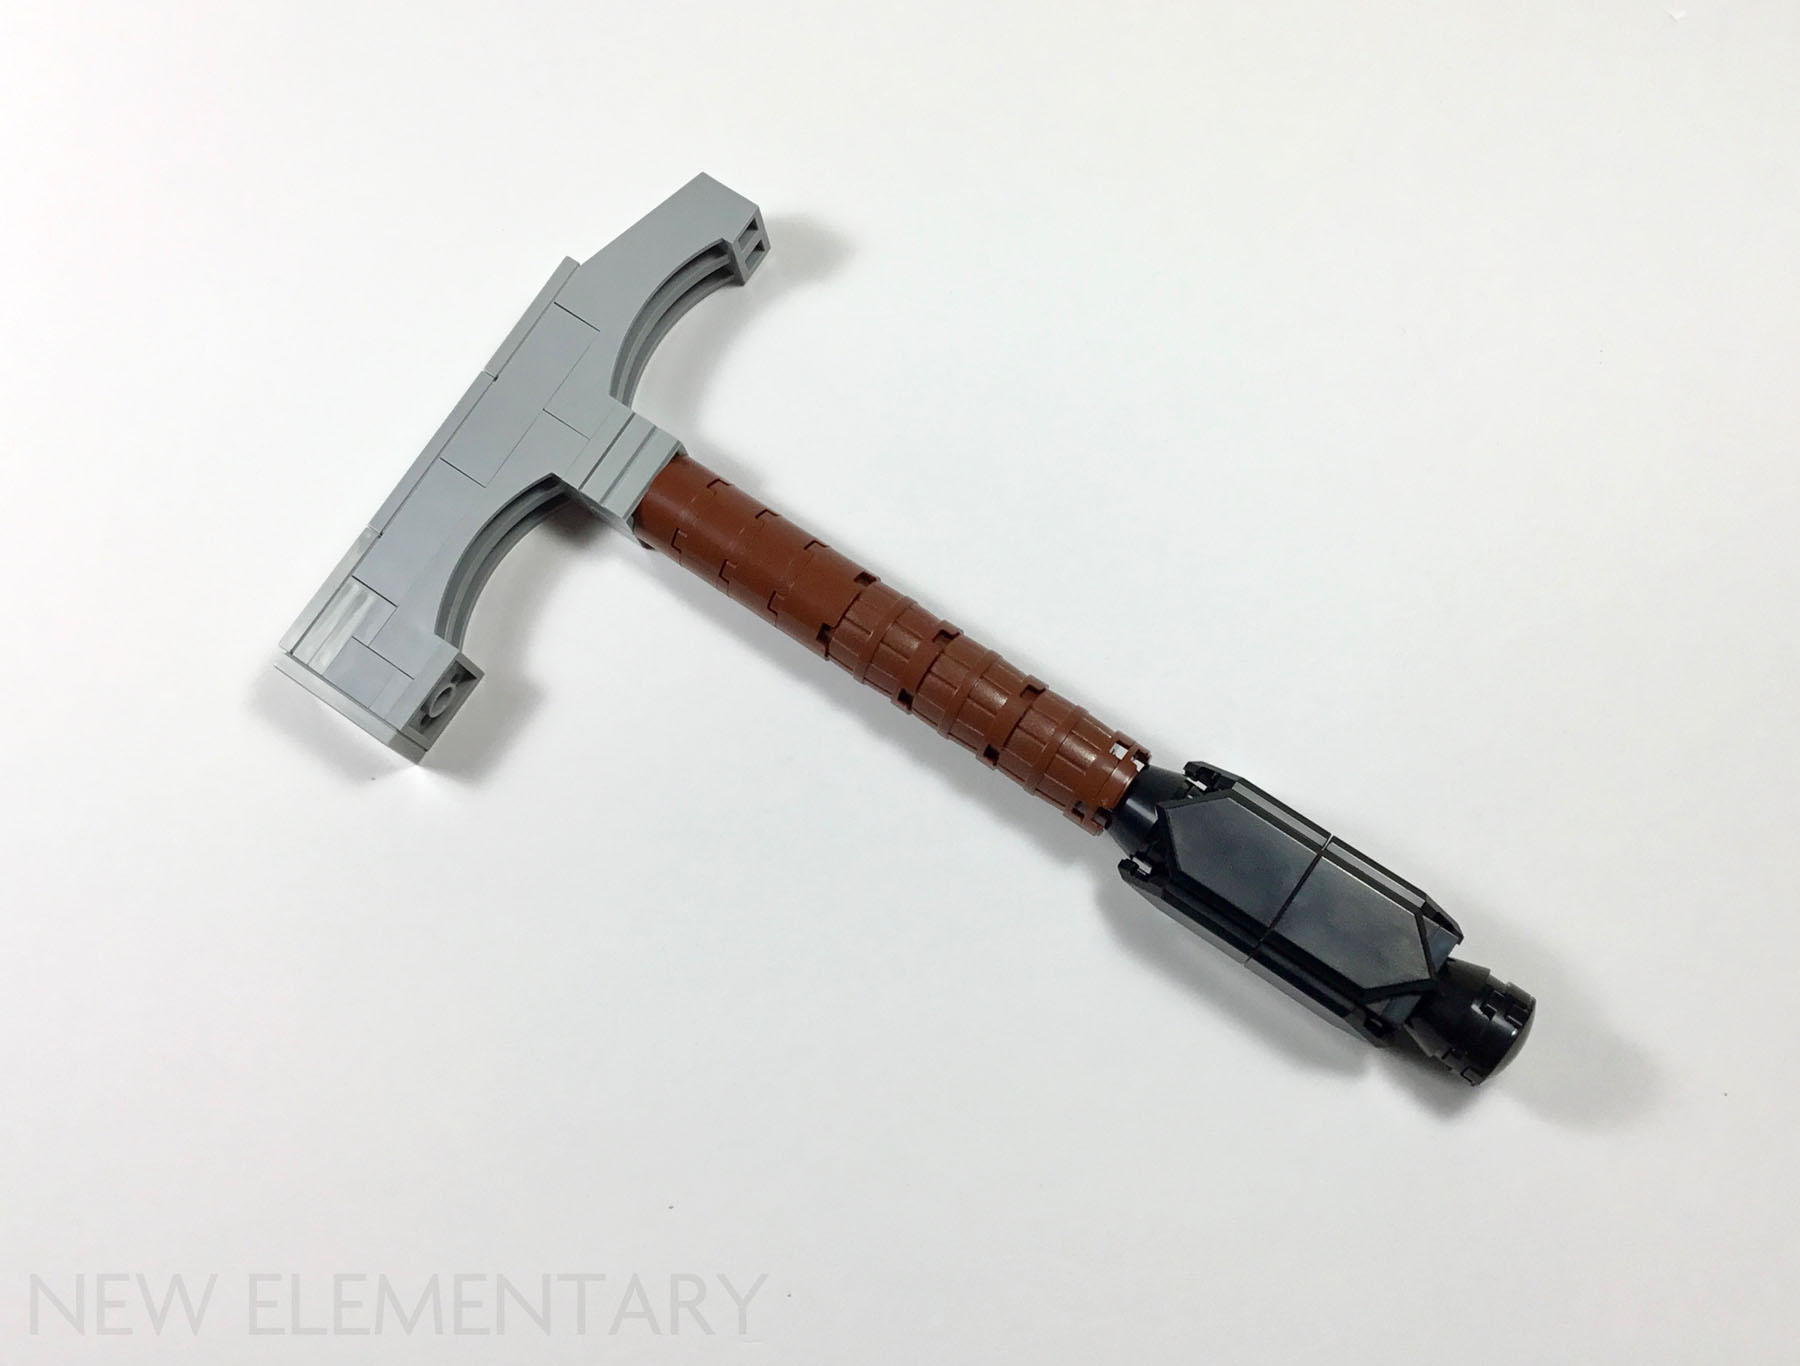 Lego Inspired 10:1 Hammer by broken003